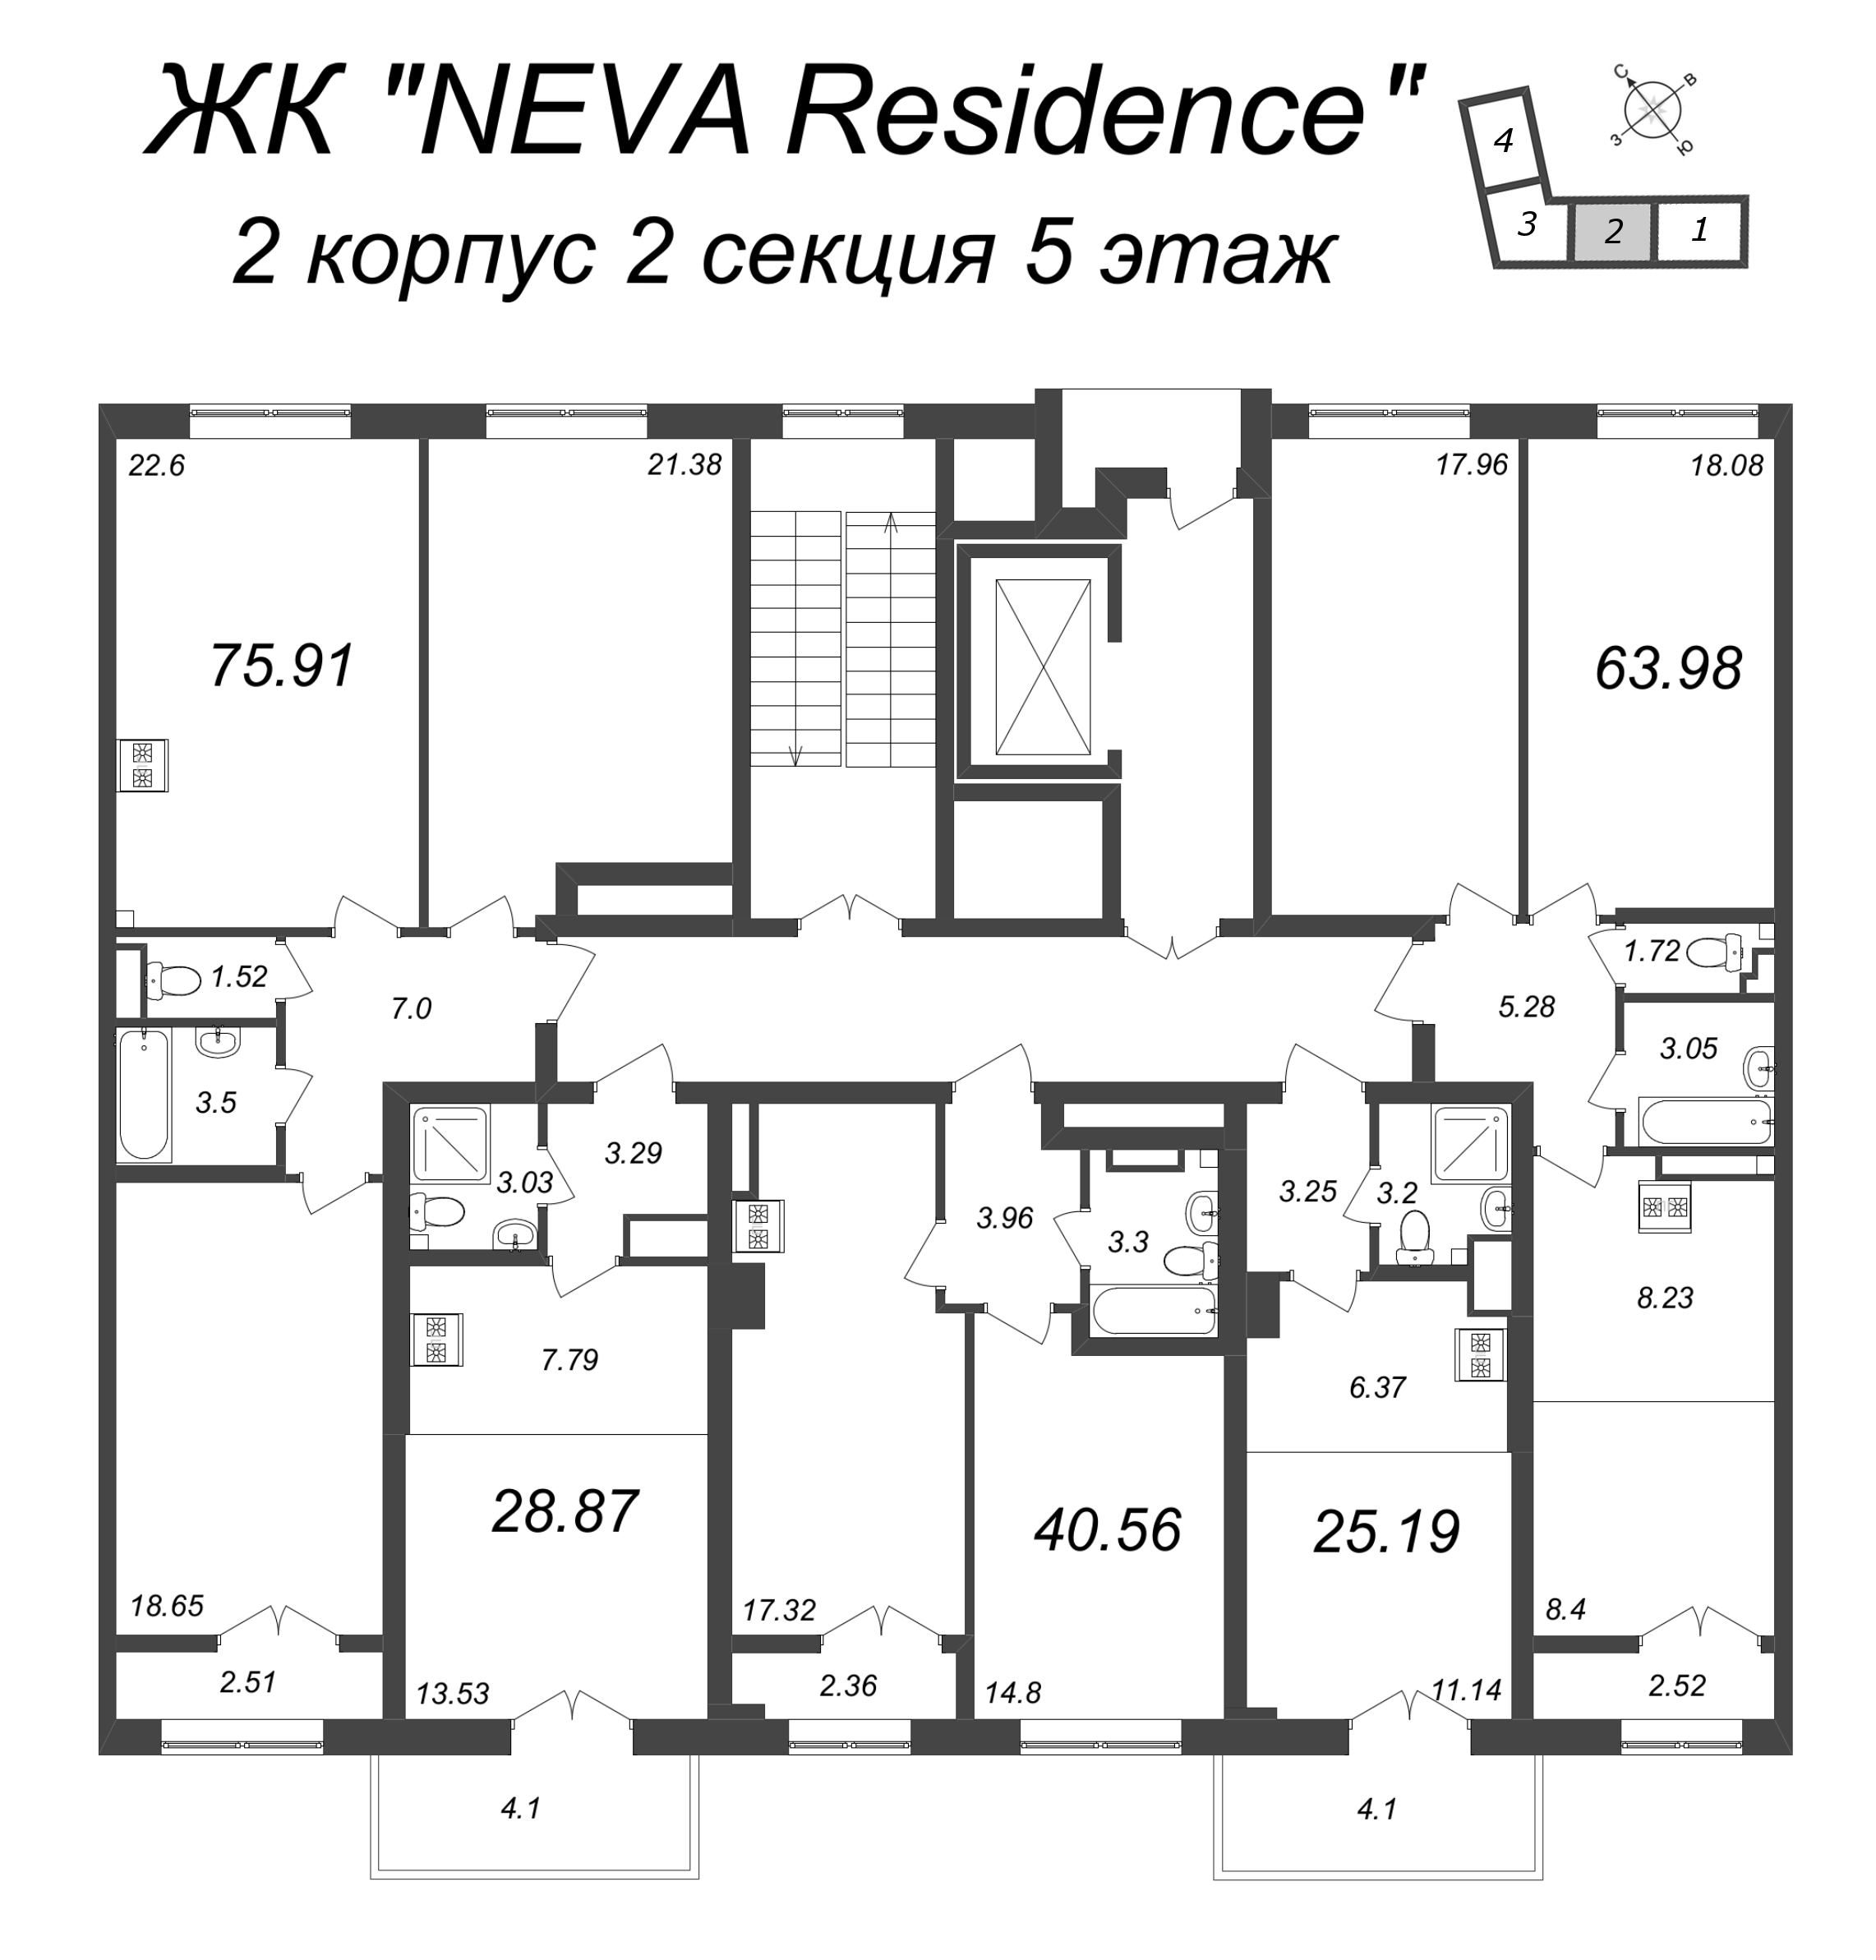 Квартира-студия, 25.19 м² в ЖК "Neva Residence" - планировка этажа